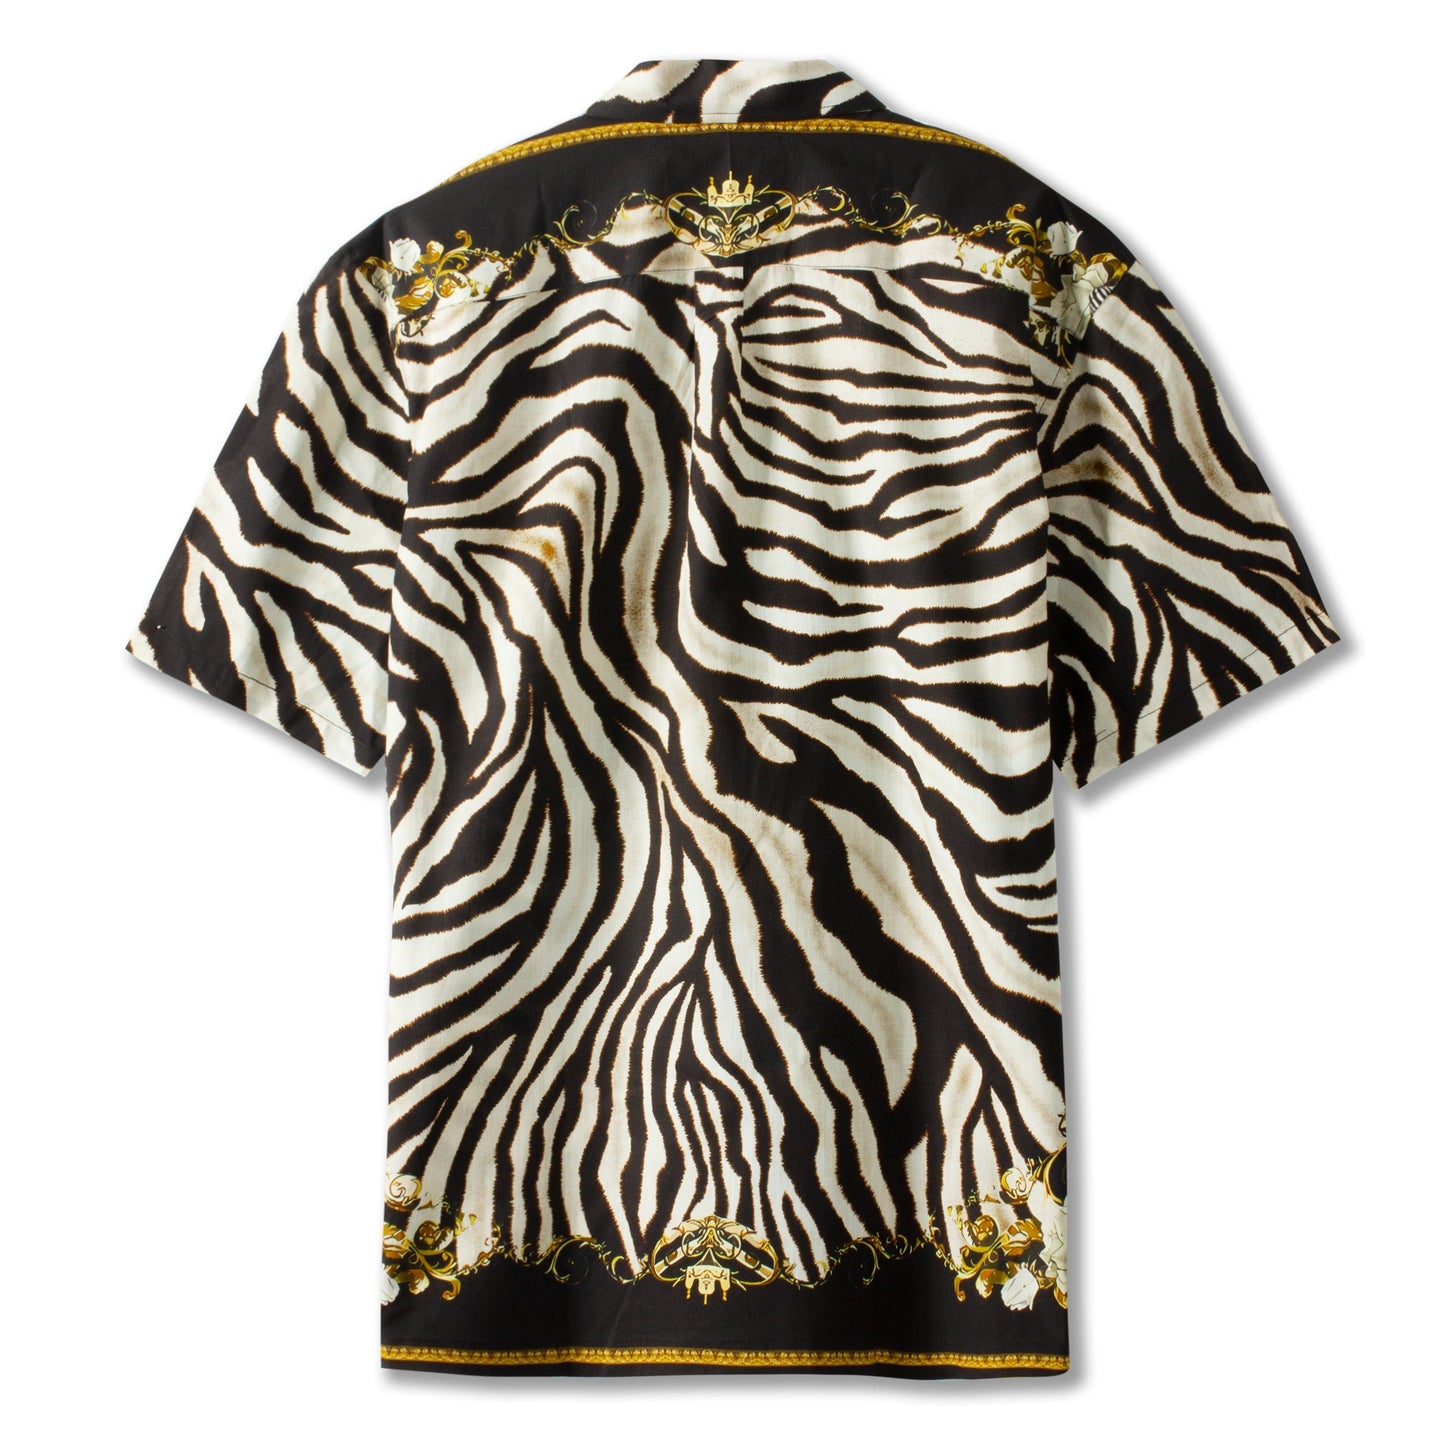 Zebra Print Short Sleeve Dress Shirt for Men Jonvidesign